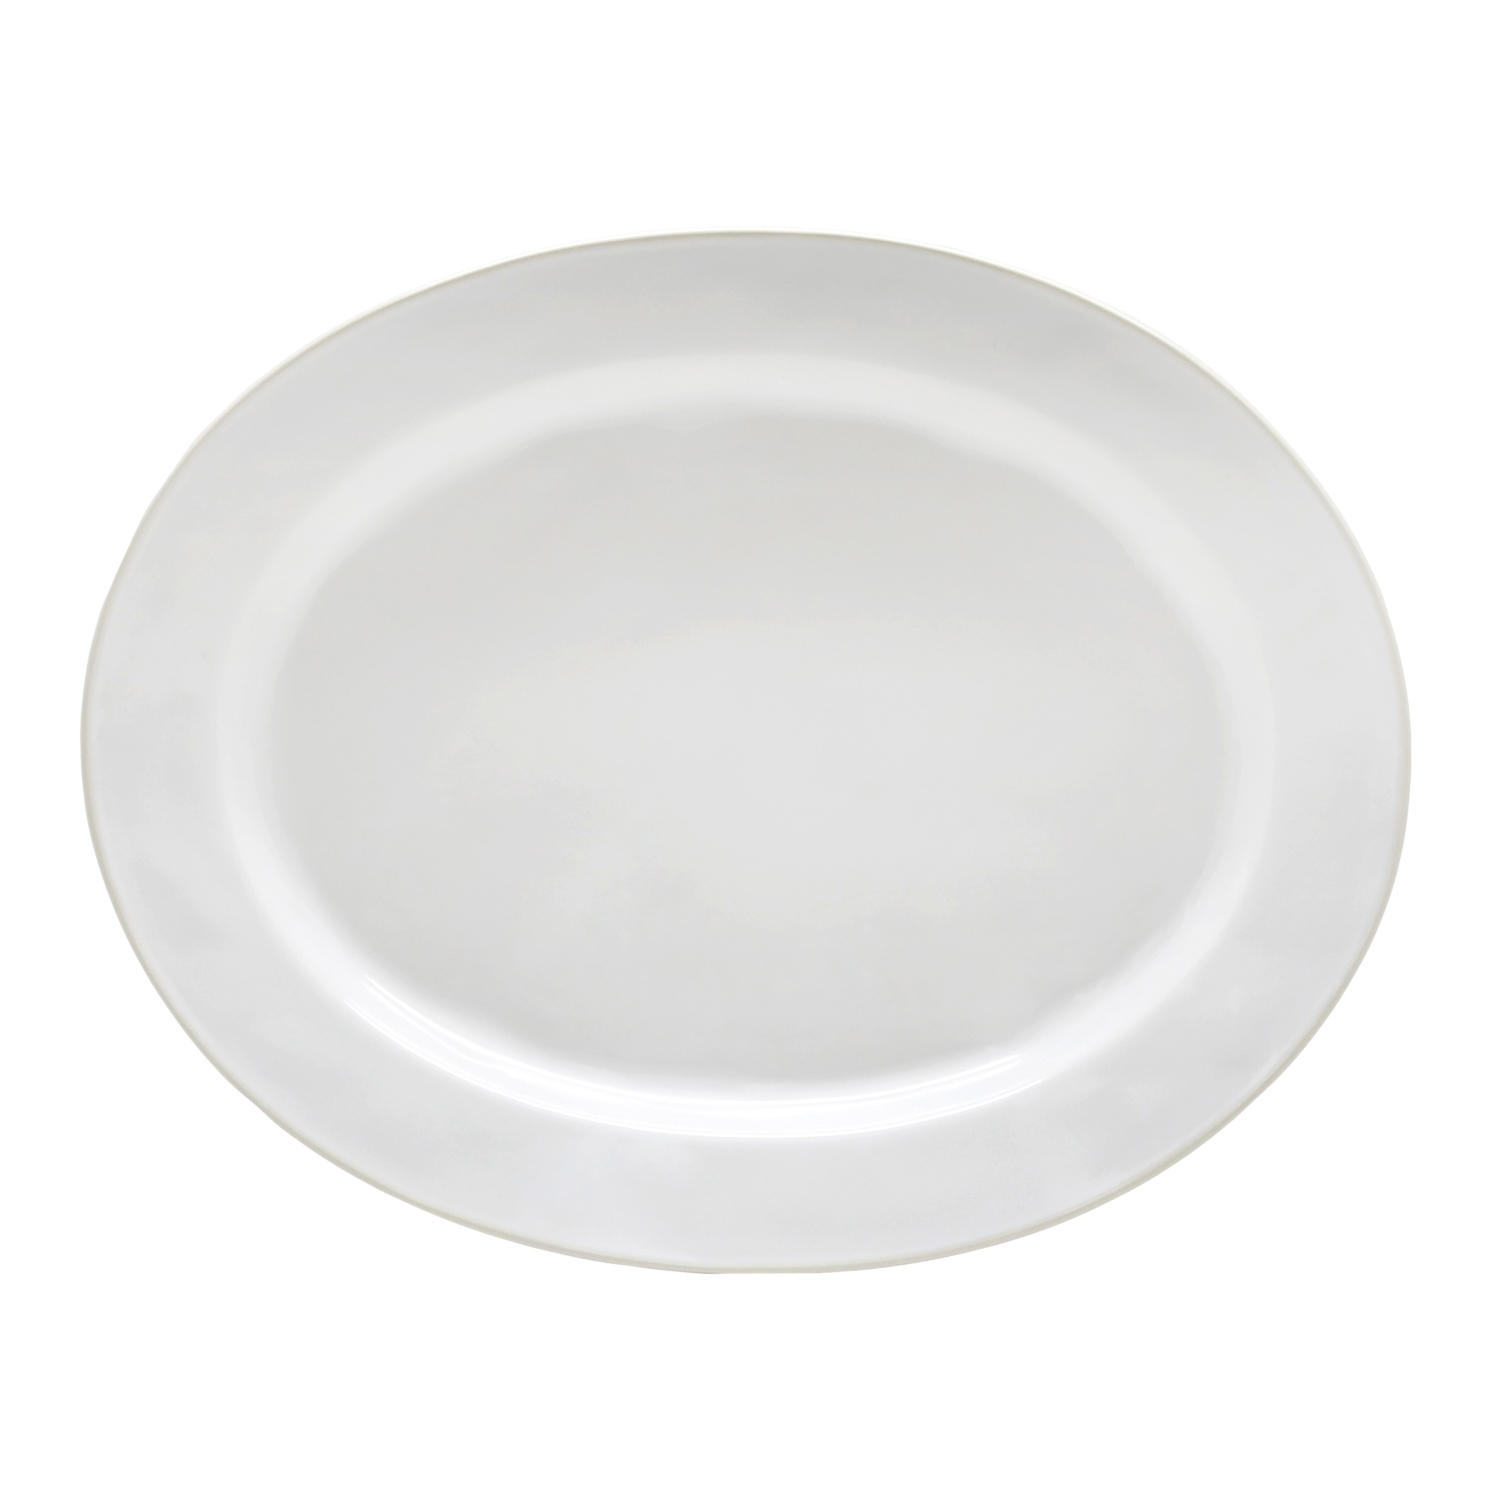 Astoria White Oval Platter Large 40cm Gift